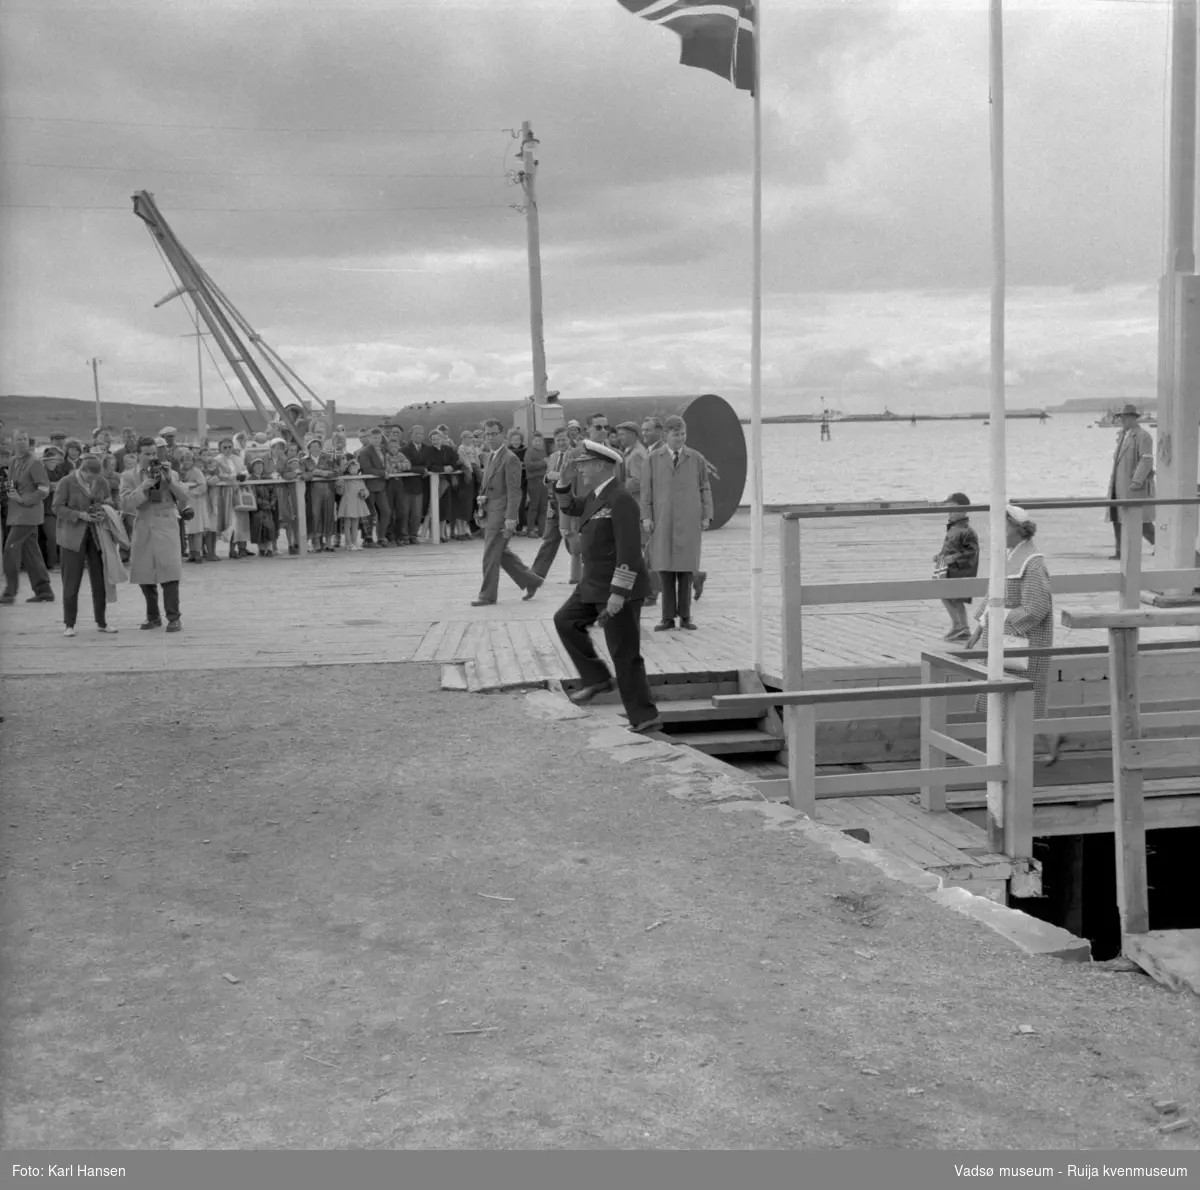 Vadsø juli 1959. Kongebesøk. Vadsø havn, dampskipskaia. Kong Olav V går inn på kaia, prinsesse Astrid delvis skjult til høyre